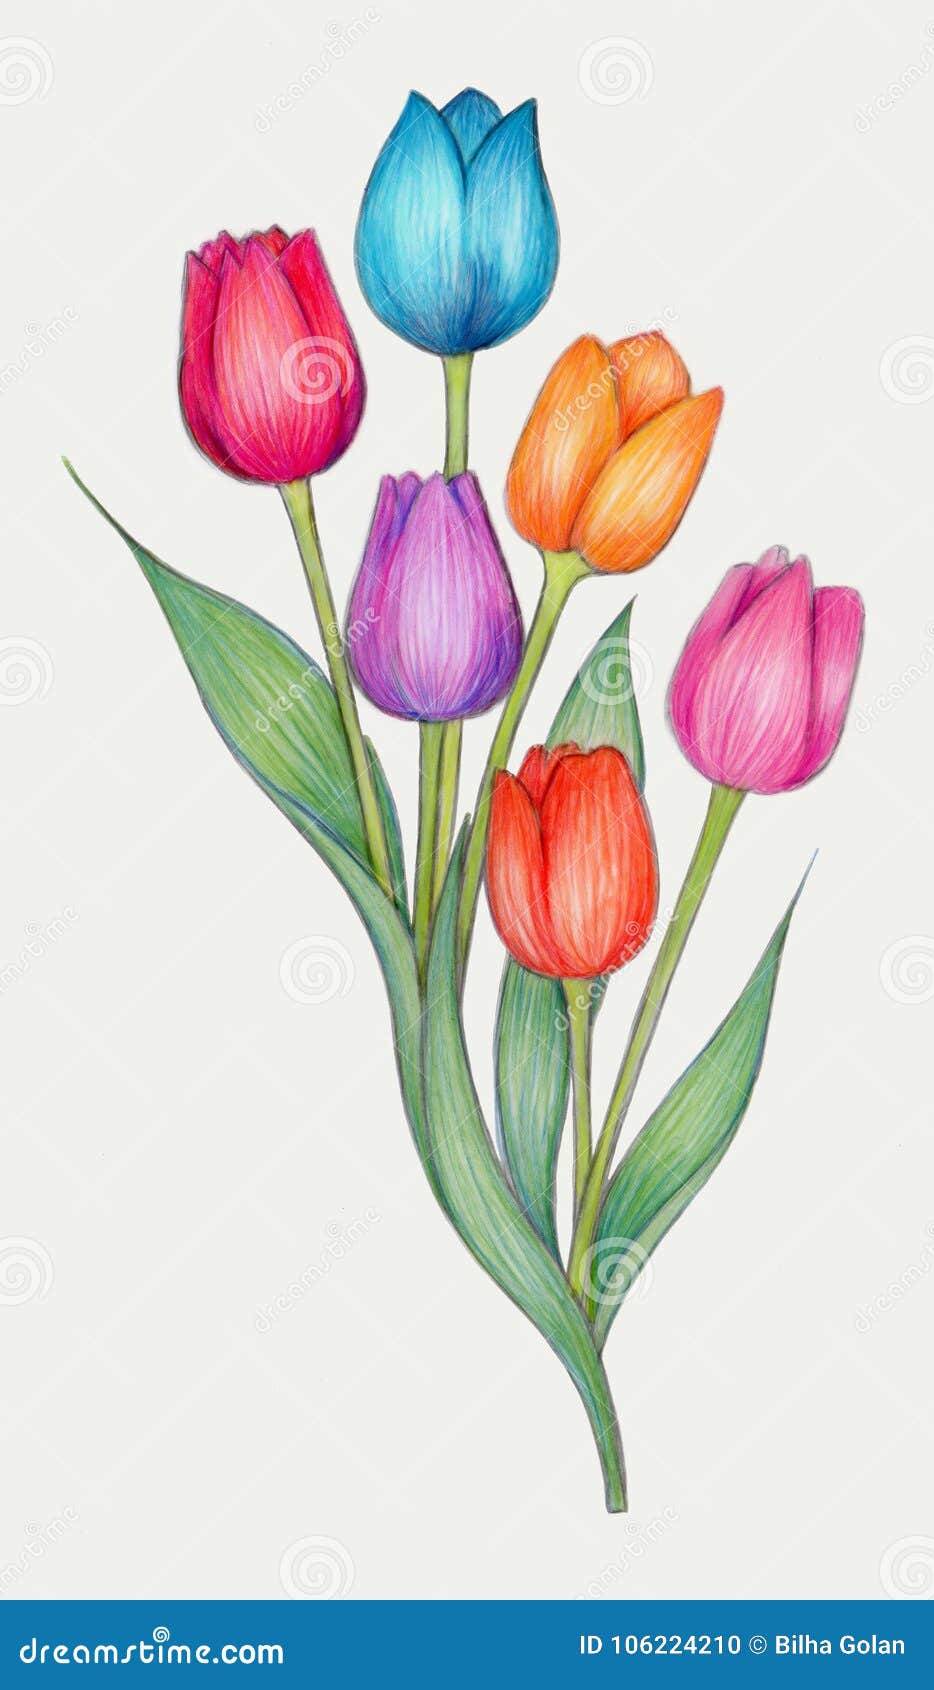 Disegno Di Matite Colorato Dei Tulipani Illustrazione Di Stock Illustrazione Di Nave Disegno